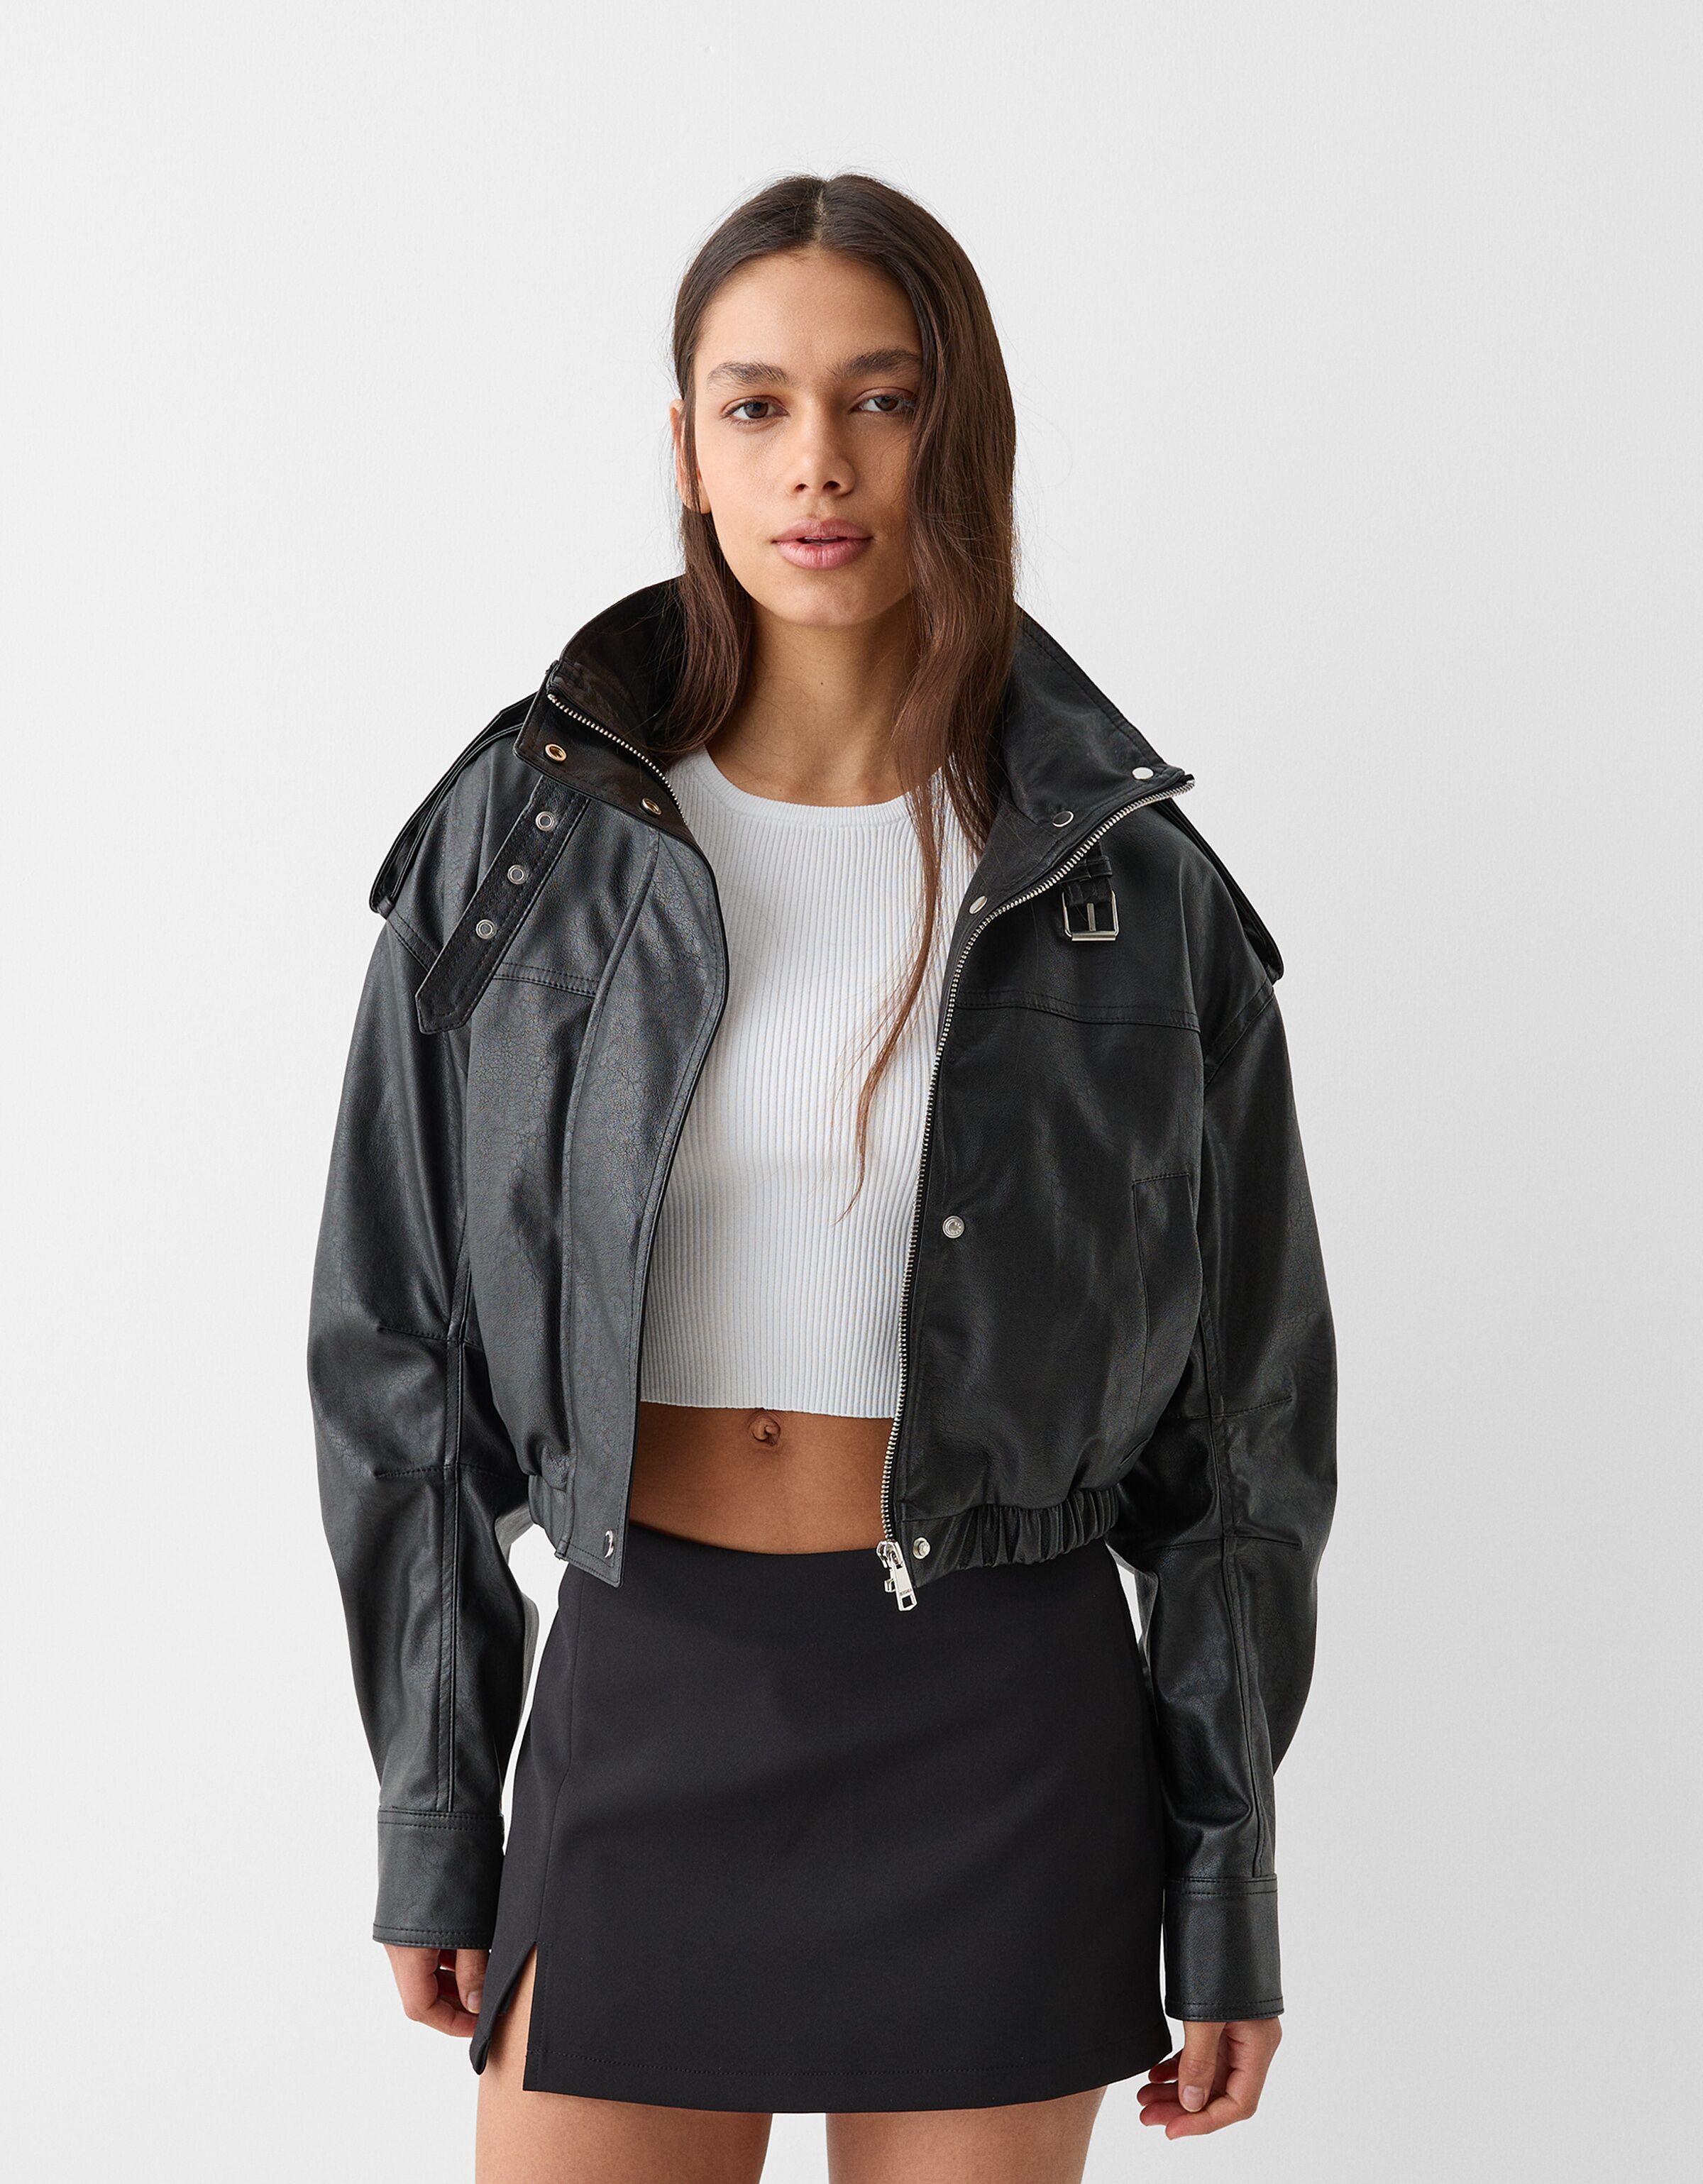 80s leather effect jacket - Jackets - Women | Bershka